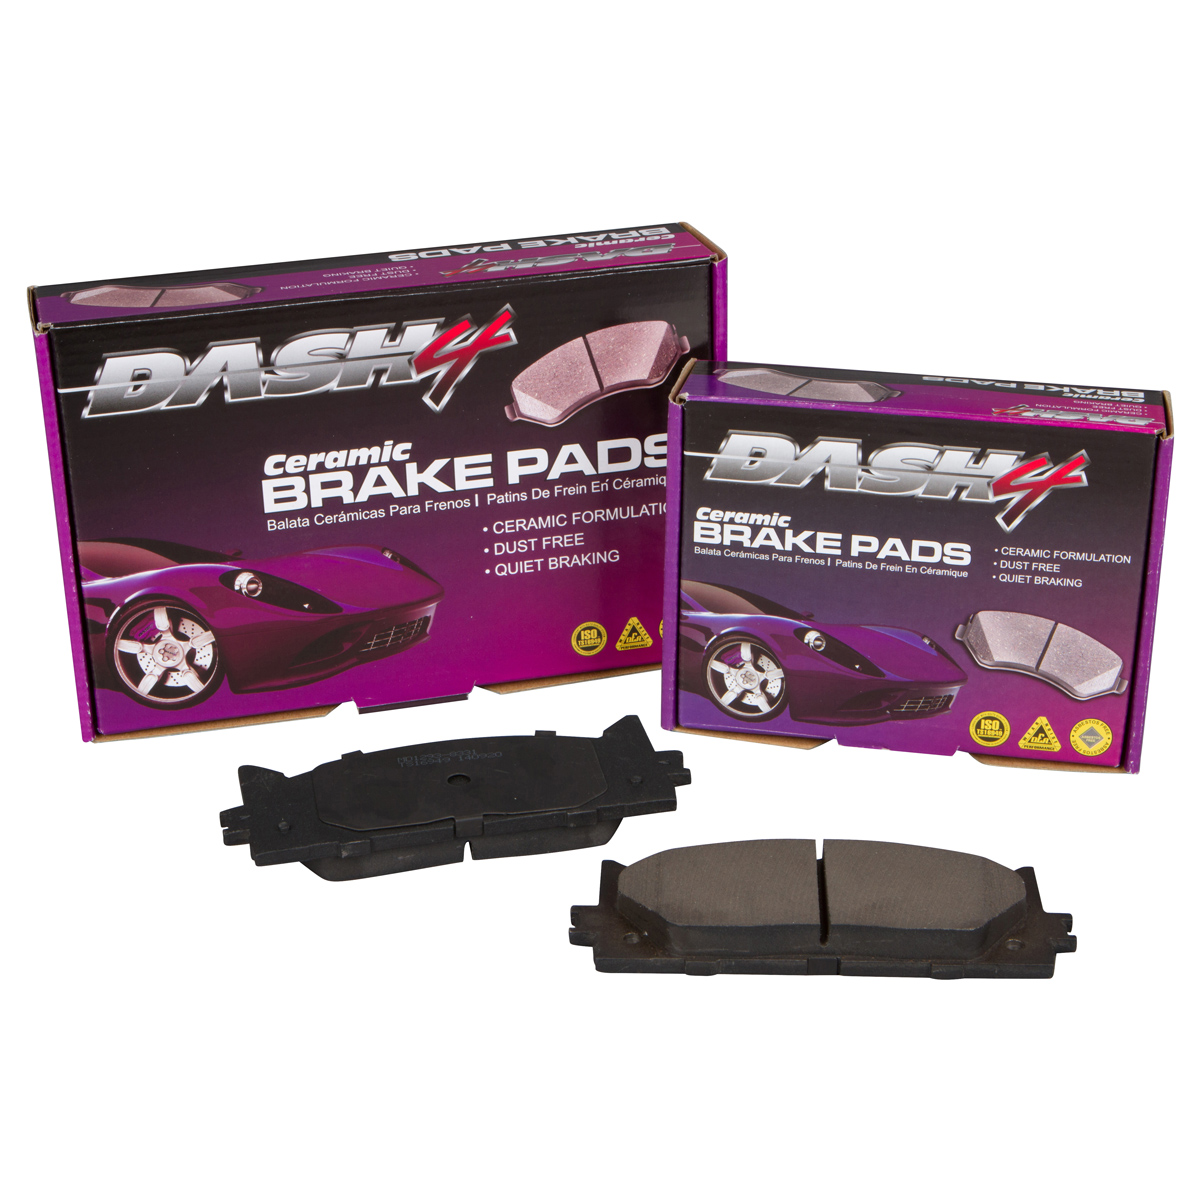 Dash4 CD527 Ceramic Brake Pad 